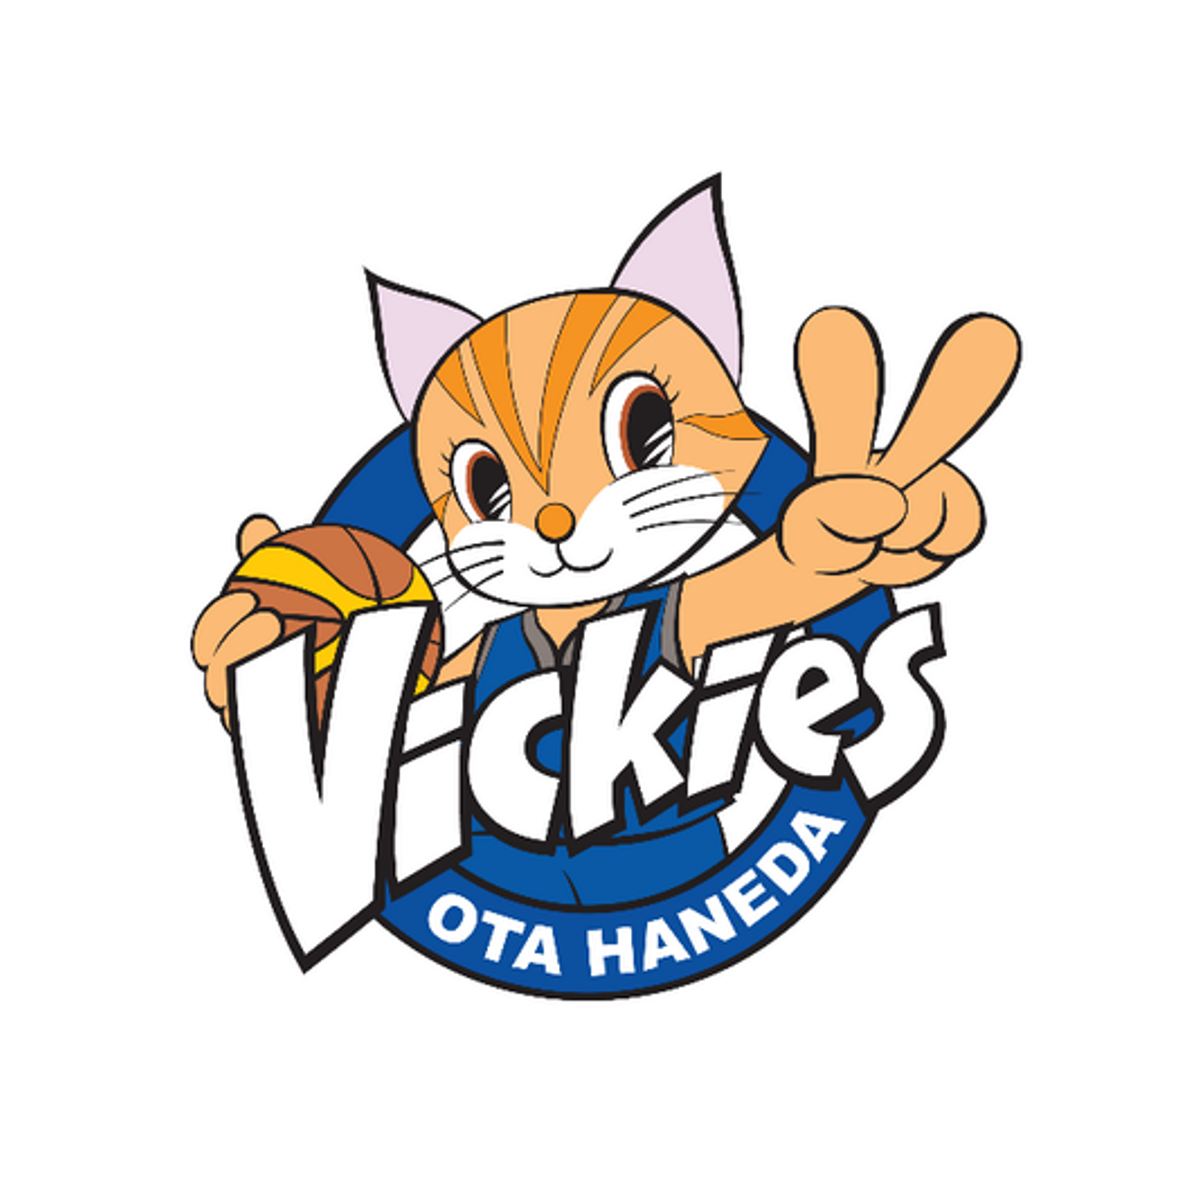 東京羽田ヴィッキーズ Vickies Basketball Press